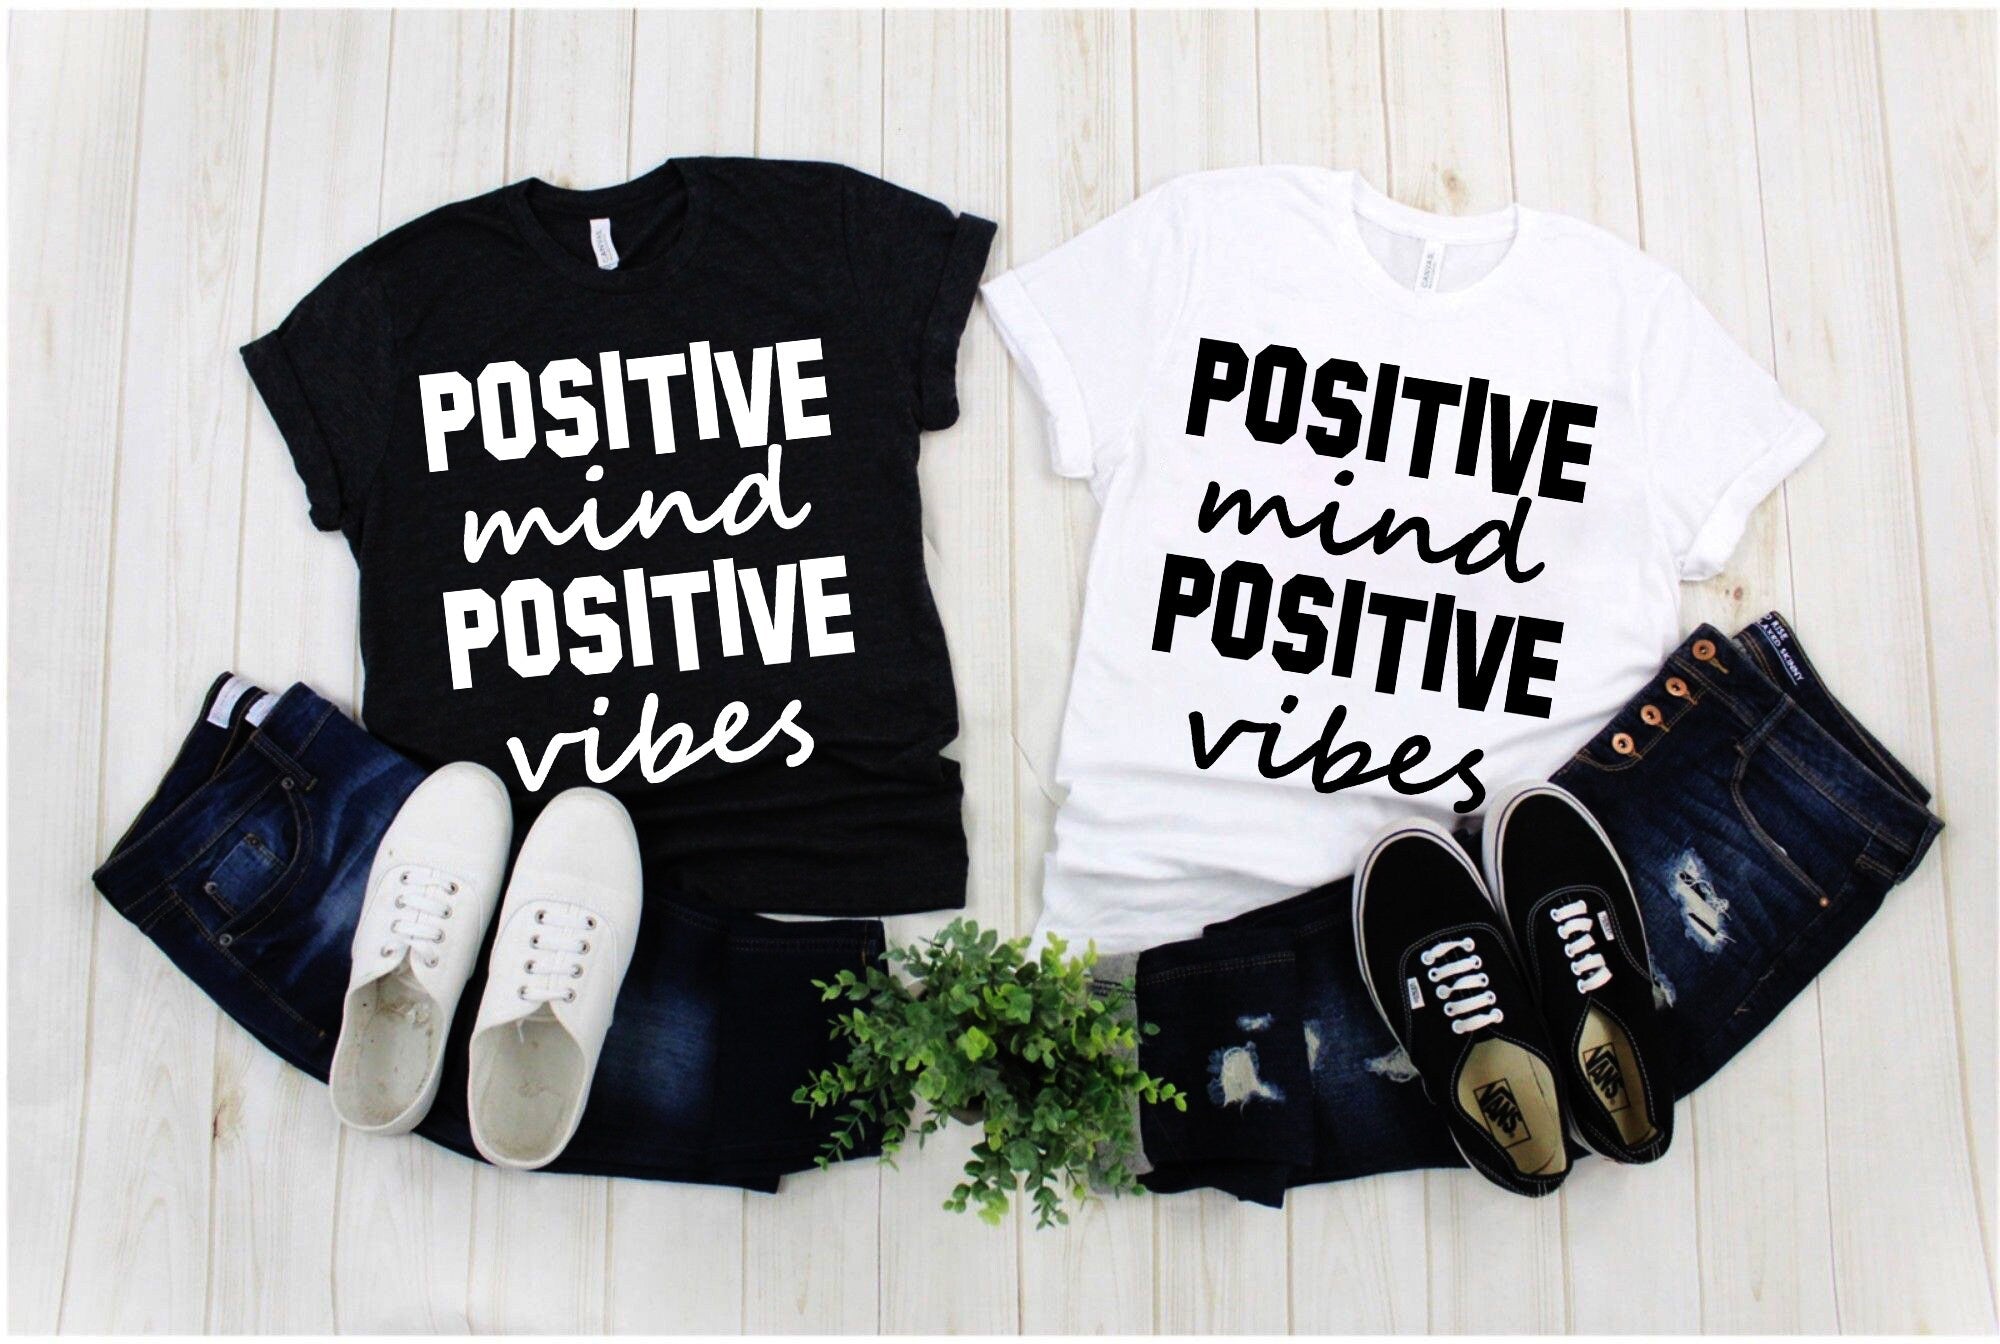 सकारात्मक मन सकारात्मक तरंगें | ब्लैक एंड व्हाइट योग टी-शर्ट, पुरुषों के लिए टी-शर्ट, महिलाओं के लिए टी-शर्ट, योग, प्रेरक - प्लसमिनस्को.कॉम